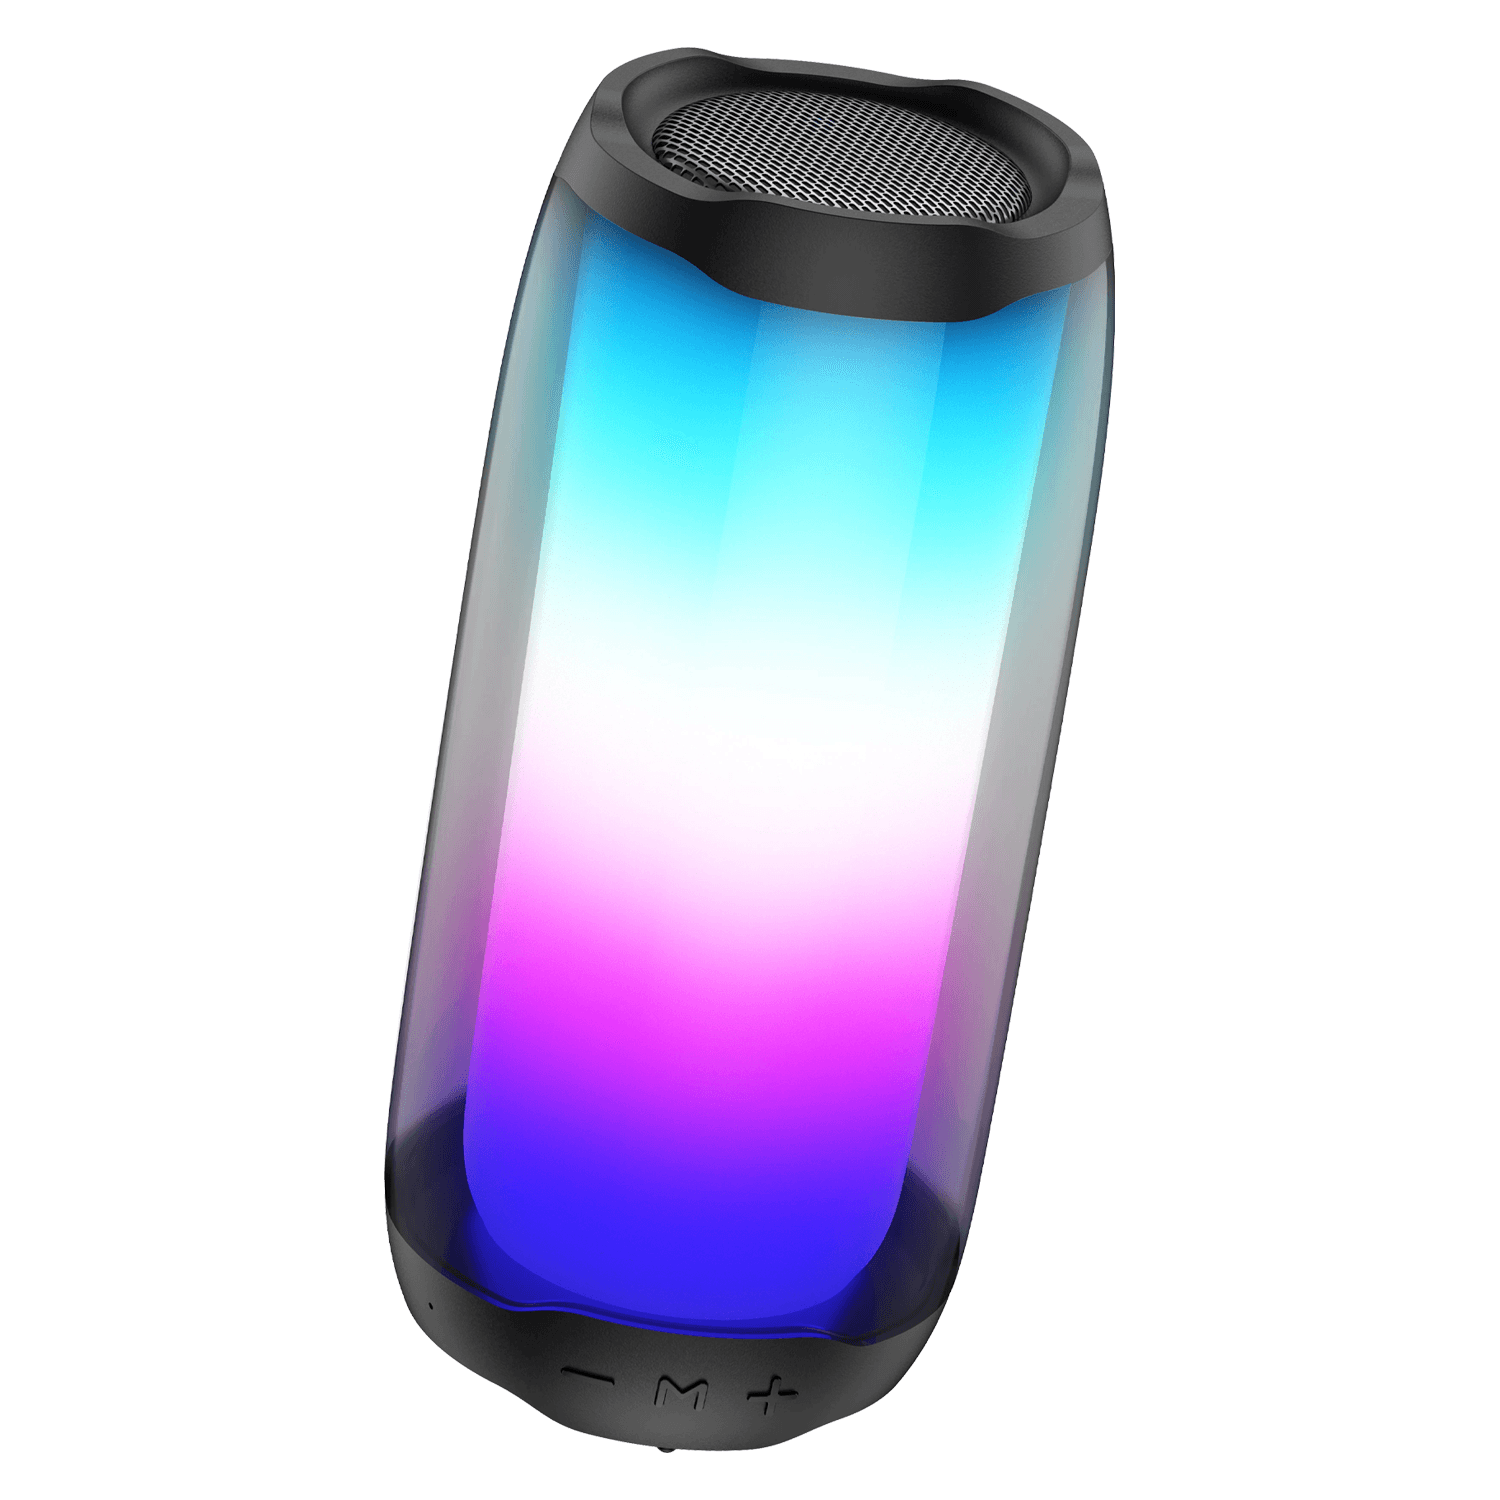 مكبر صوت لاسلكي ملون 4000 ميلي امبير من بودي Budi Colorful Wireless 4000MAH Speaker